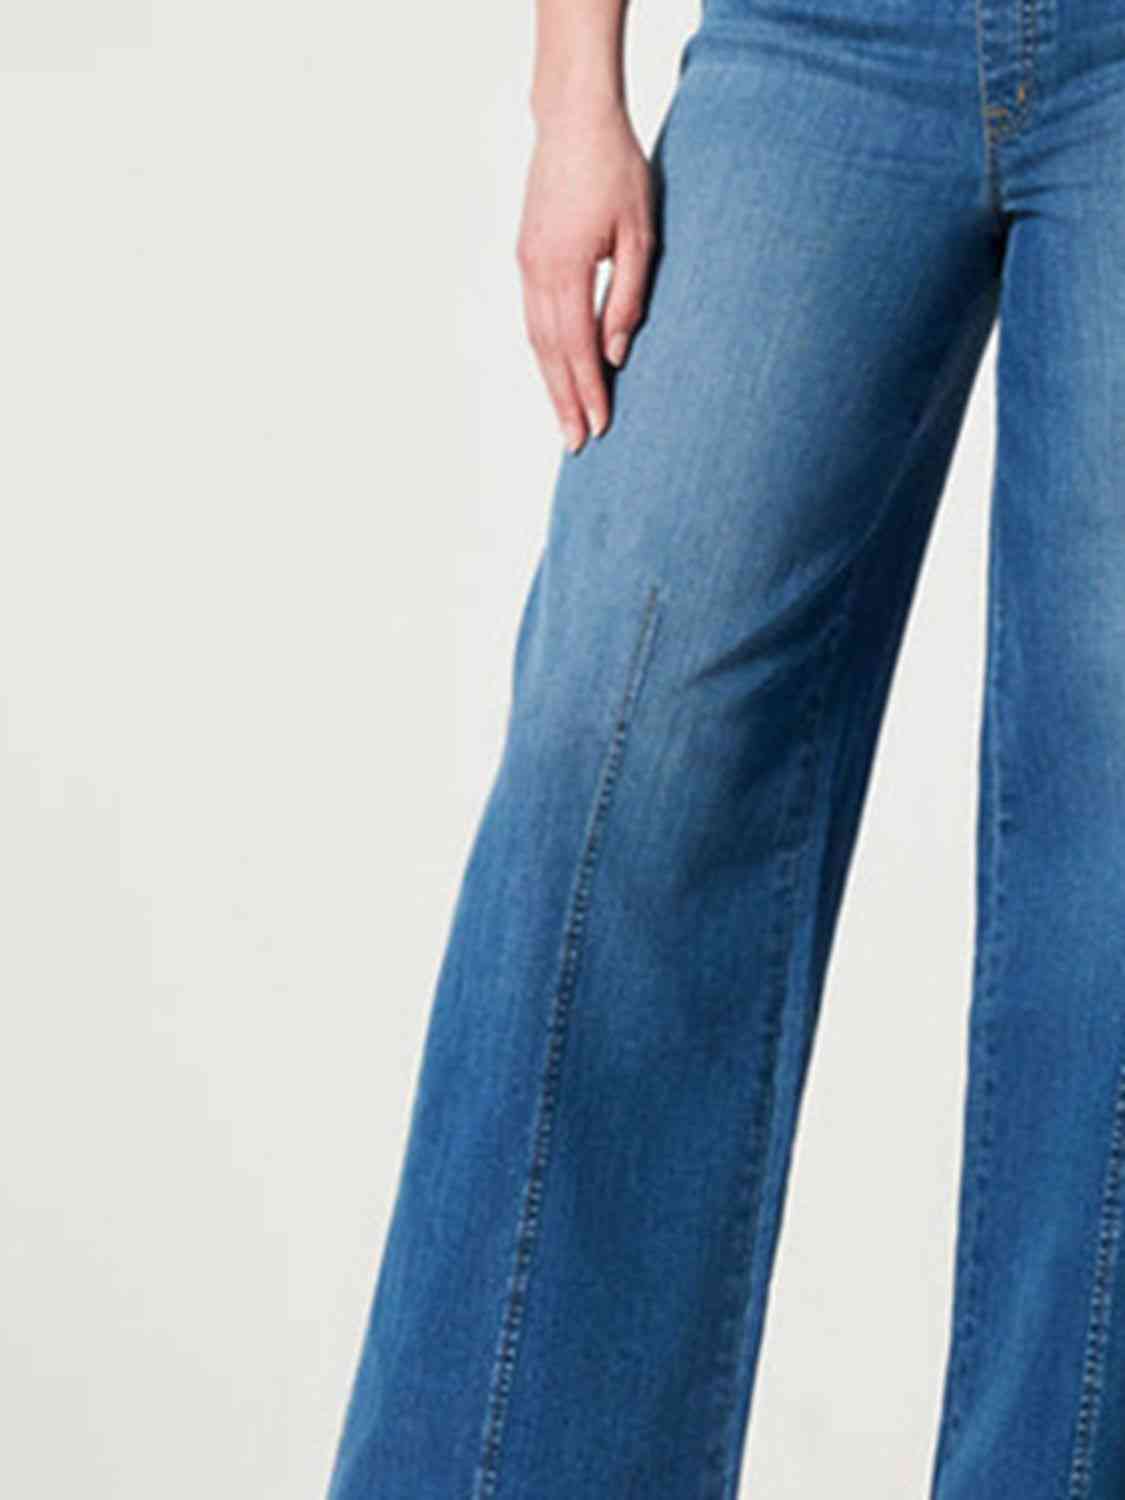 Wide Leg Long Jeans